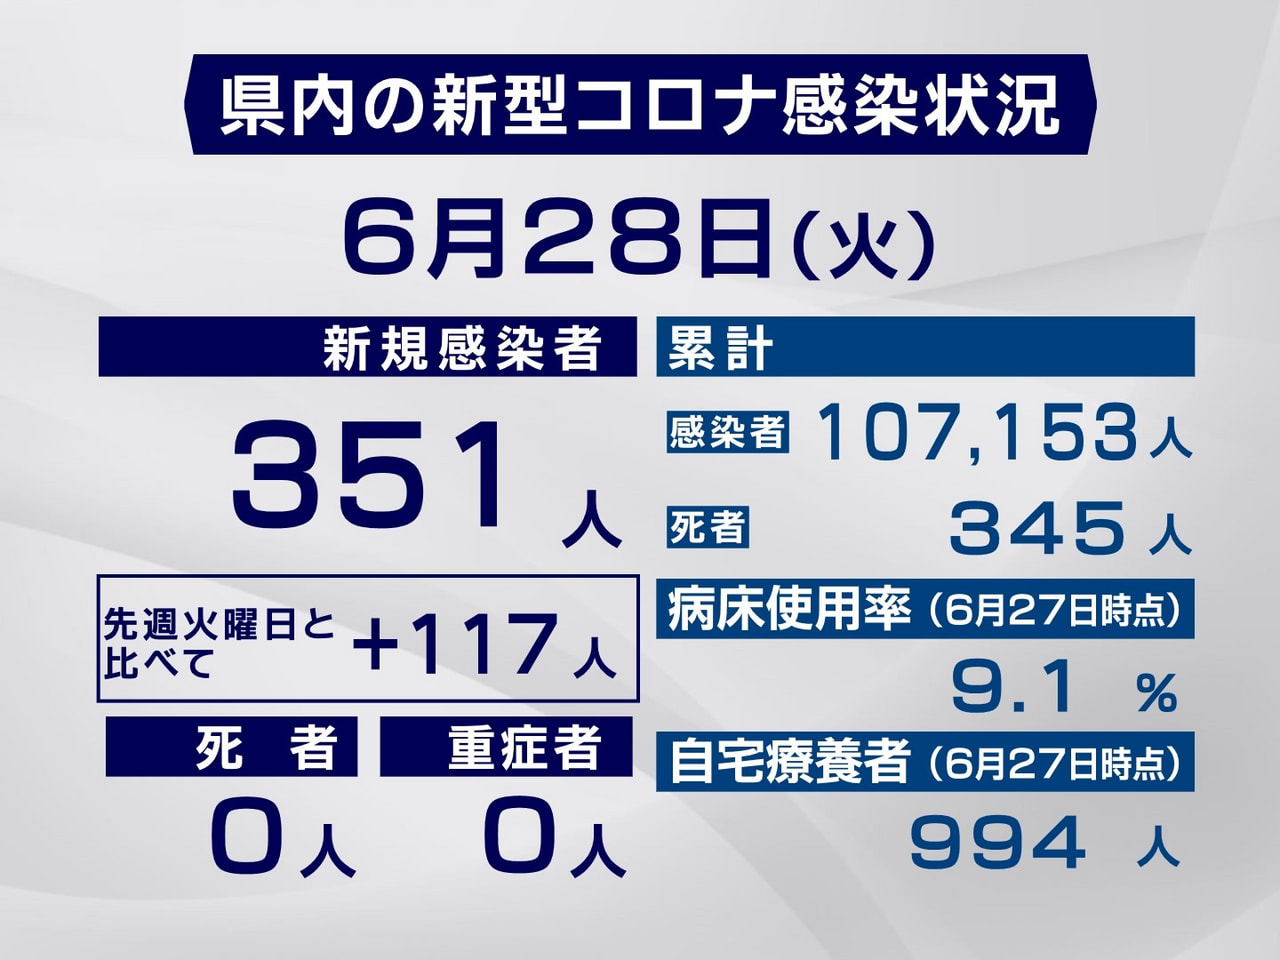 岐阜県は２８日、新型コロナウイルスの新規感染者が３５１人確認されたと発表しました...